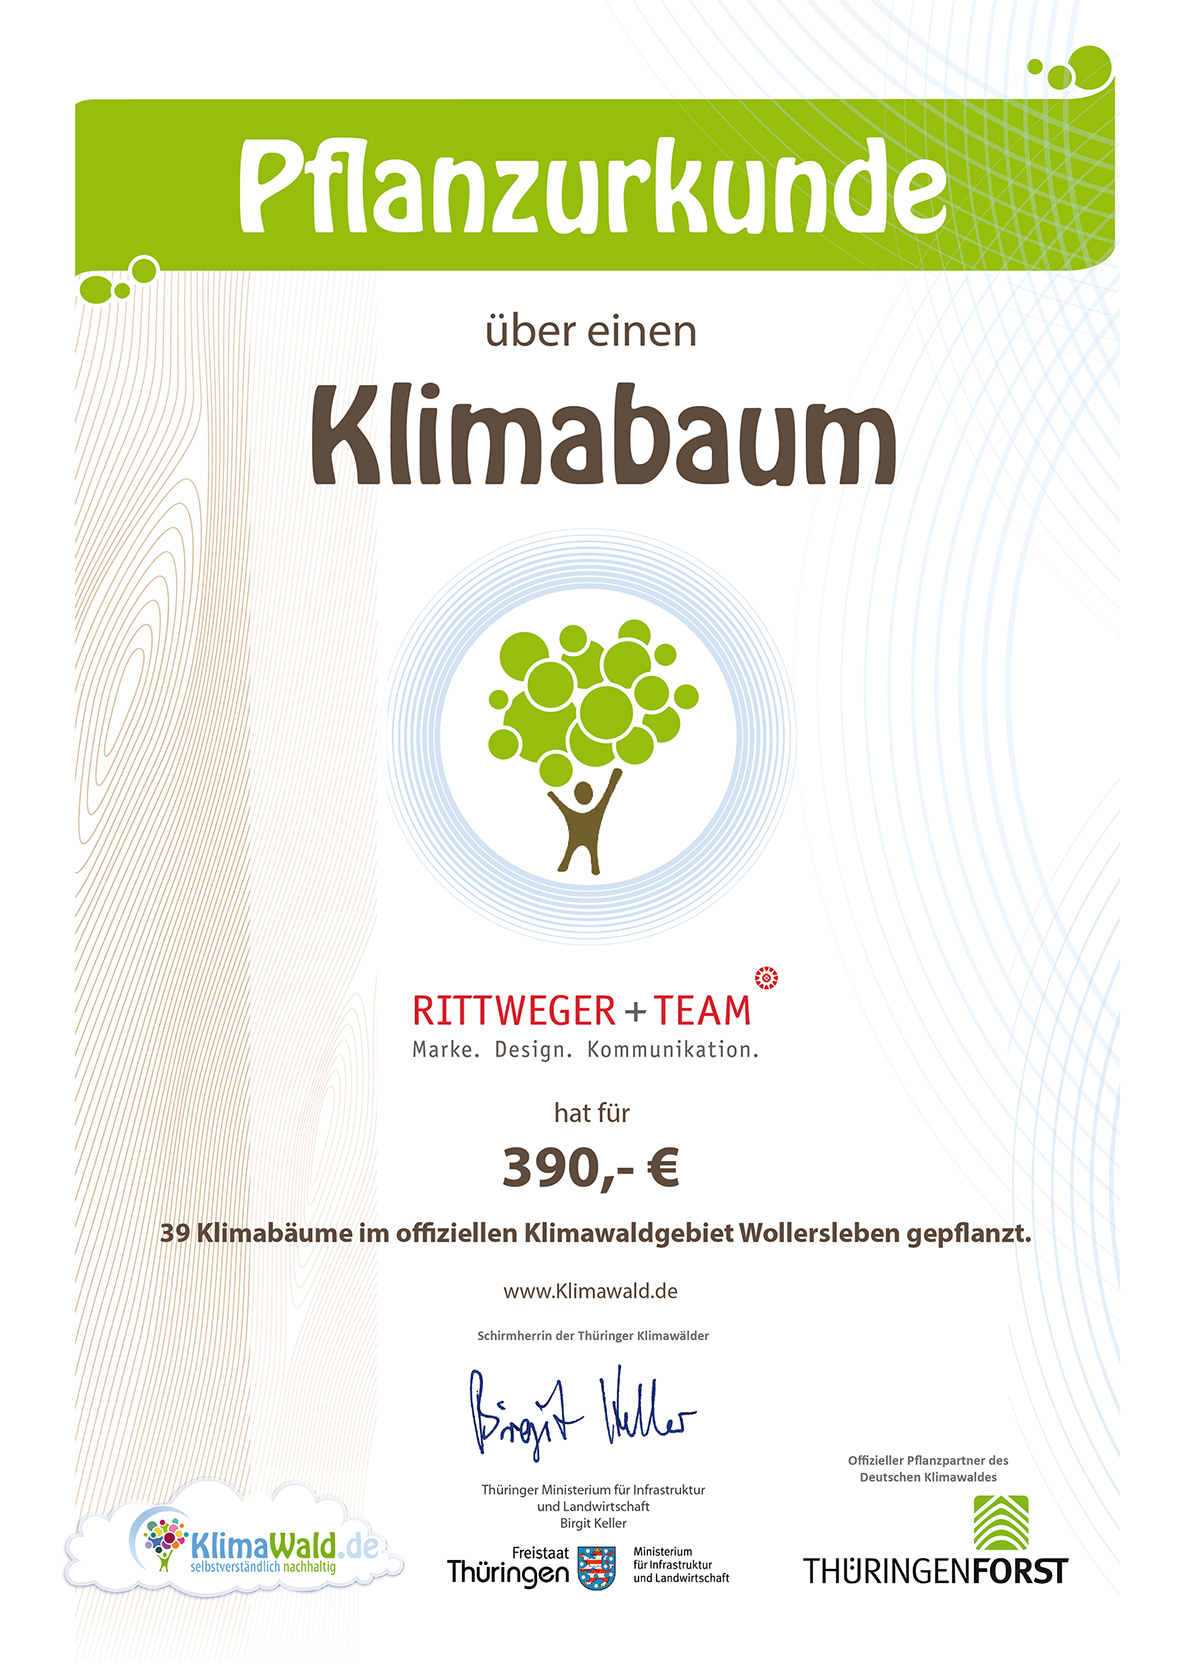 Klimaurkunde – RITTWEGER + TEAM Werbeagentur GmbH hat 39 Klimabäume im offiziellen Klimawaldgebiet Wollersleben gepflanzt.